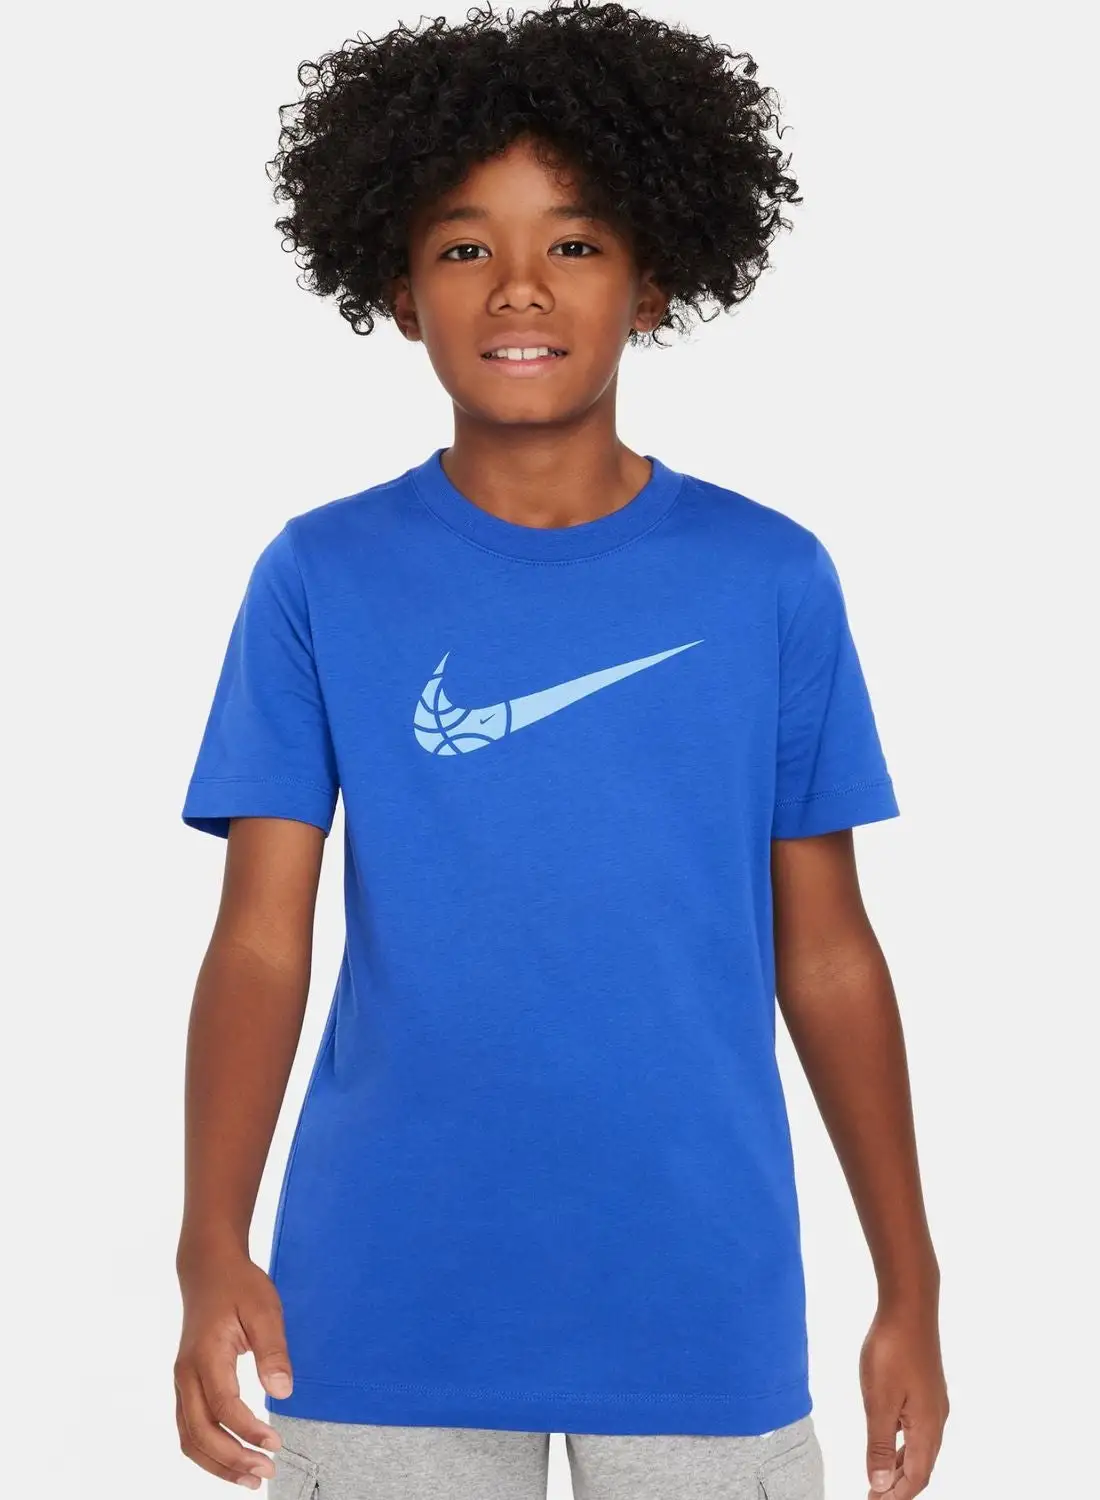 Nike Youth Nsw Basketball Core T-Shirt